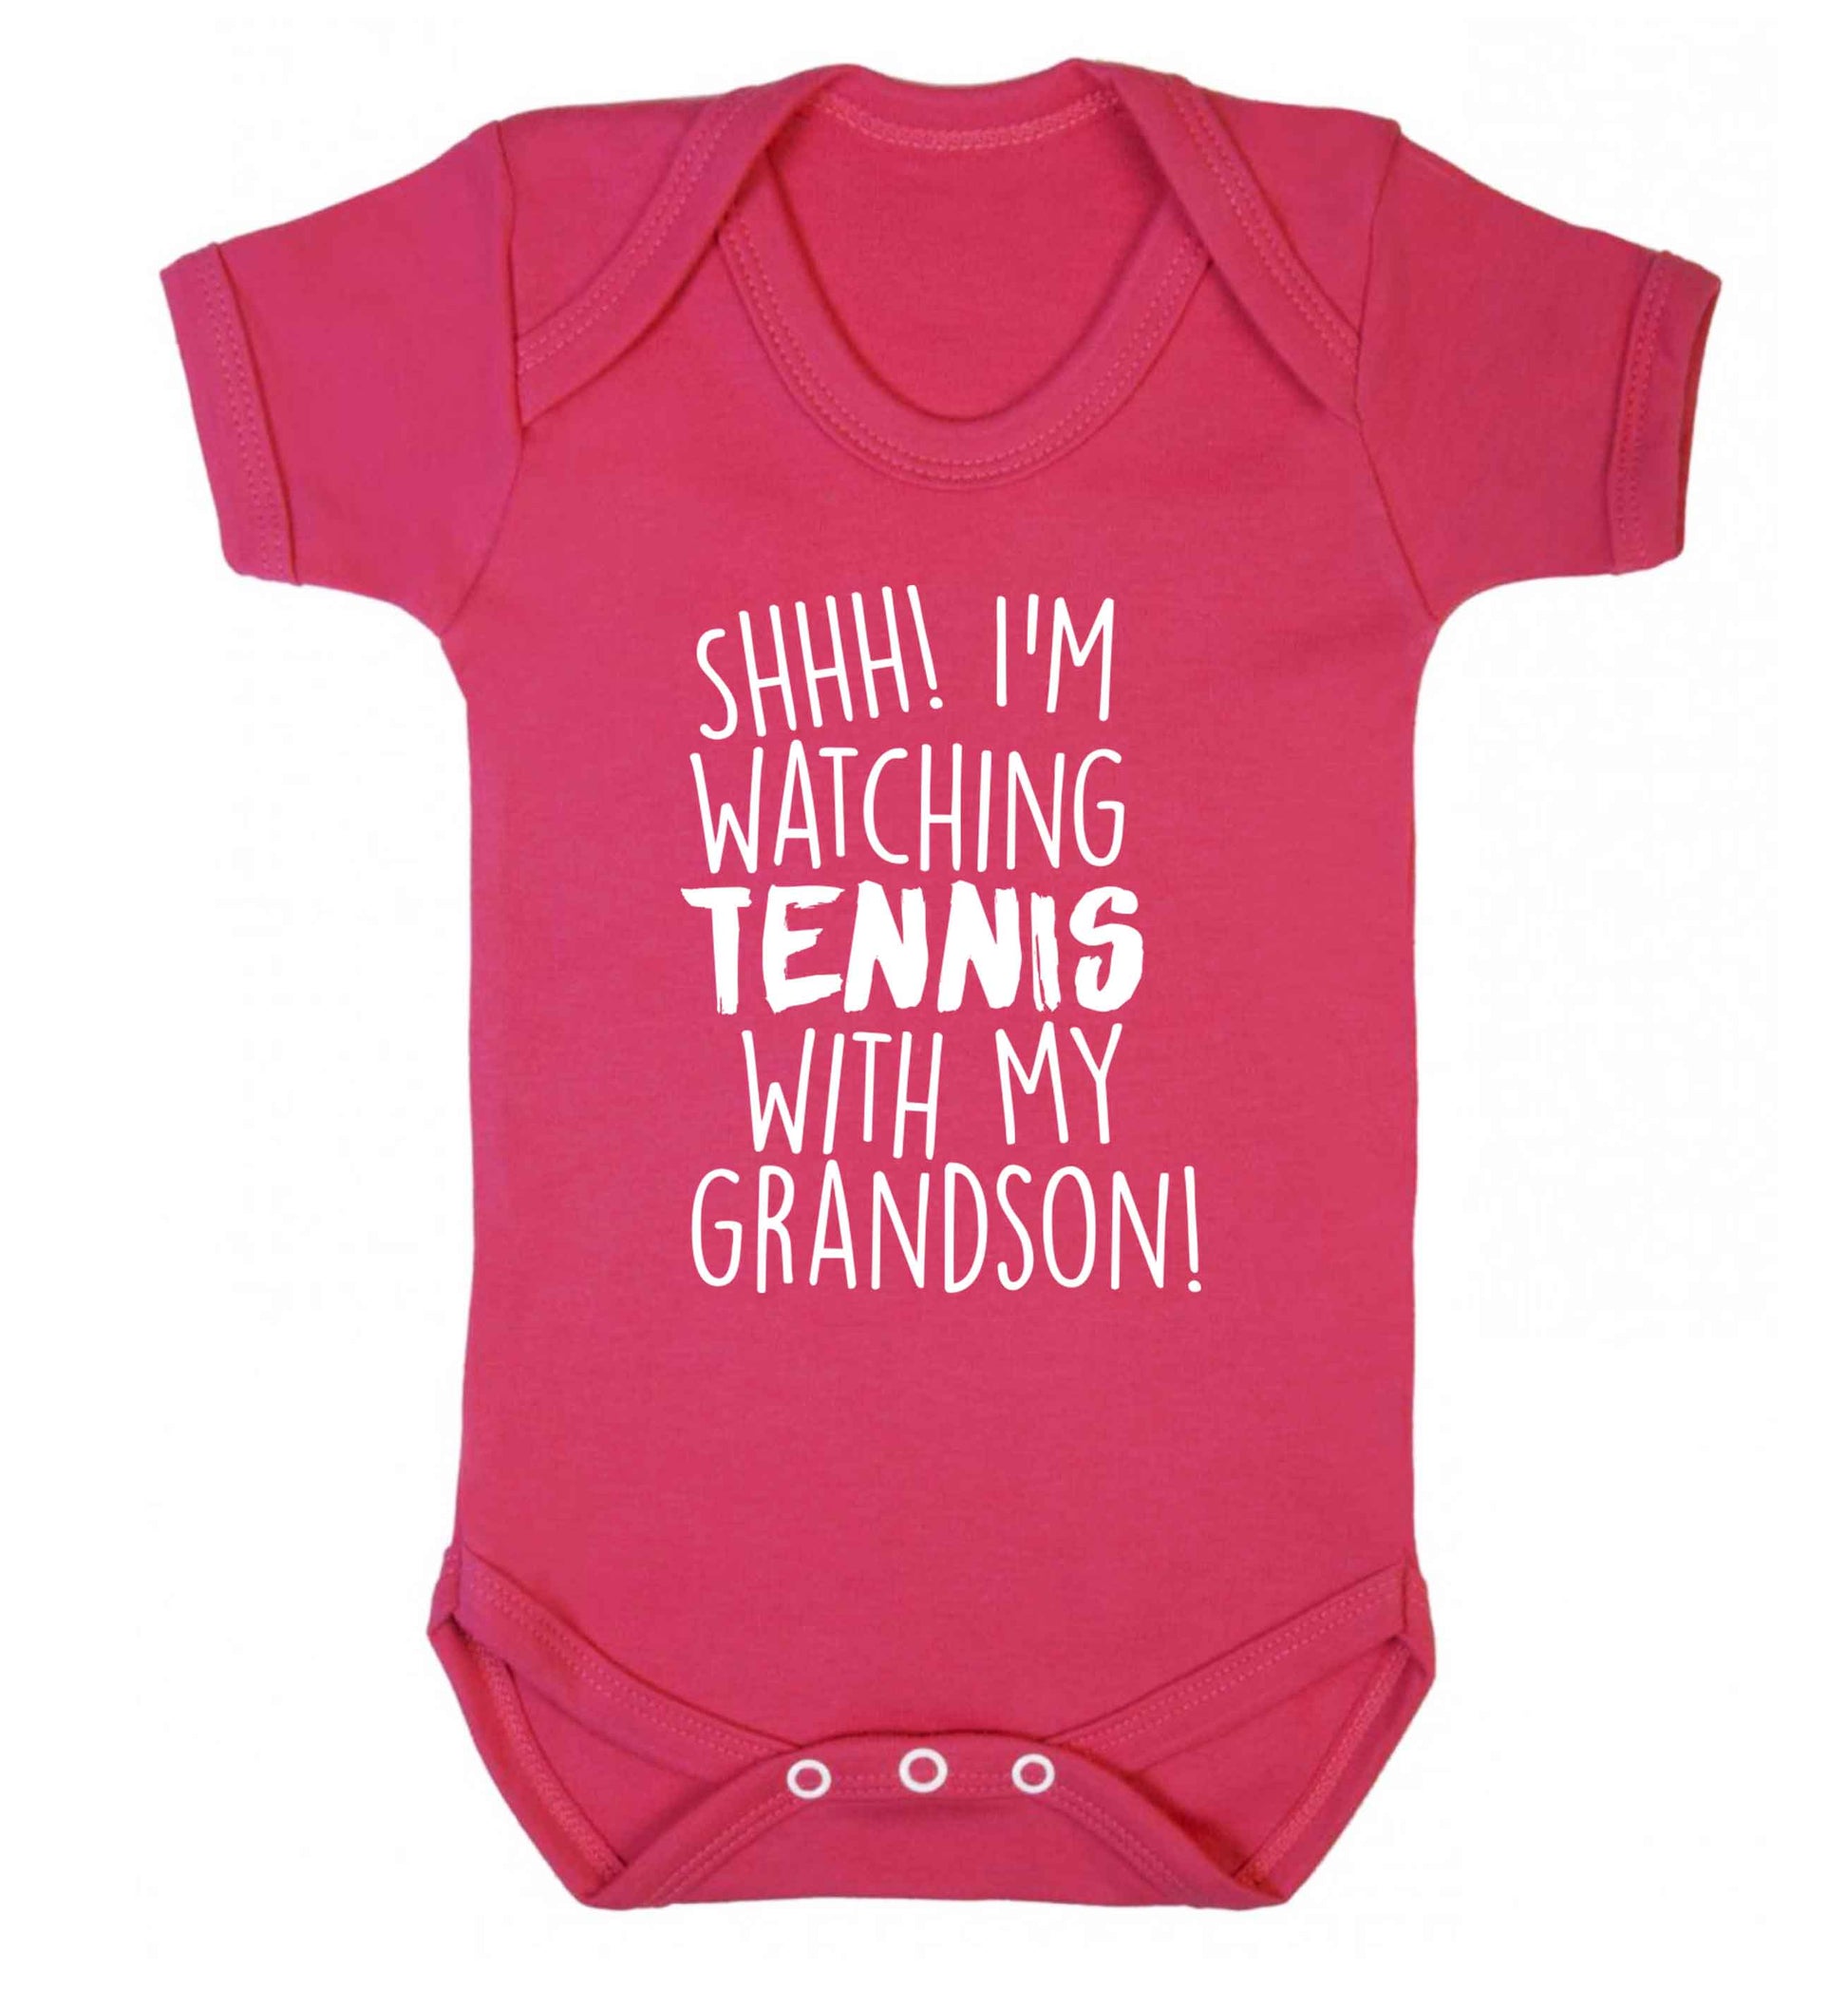 Shh! I'm watching tennis with my grandson! Baby Vest dark pink 18-24 months